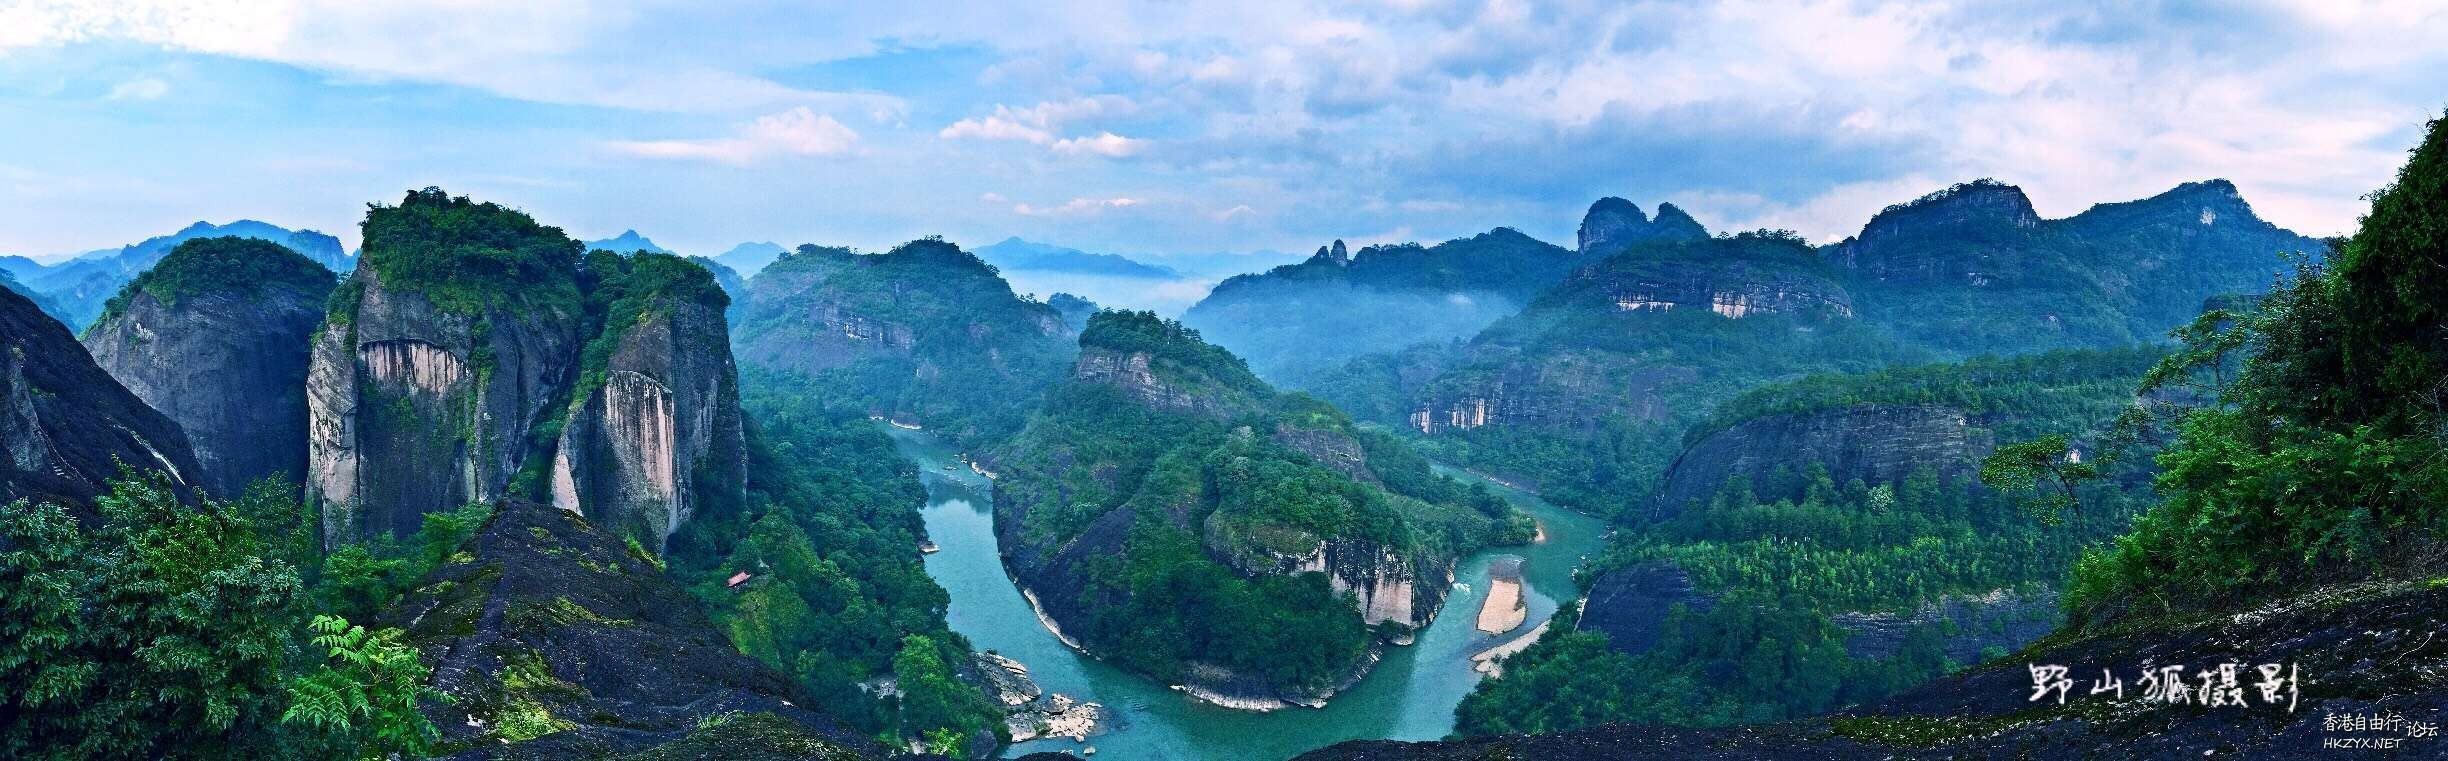 武夷山一遊  ChinaTravel 中國觀光景點